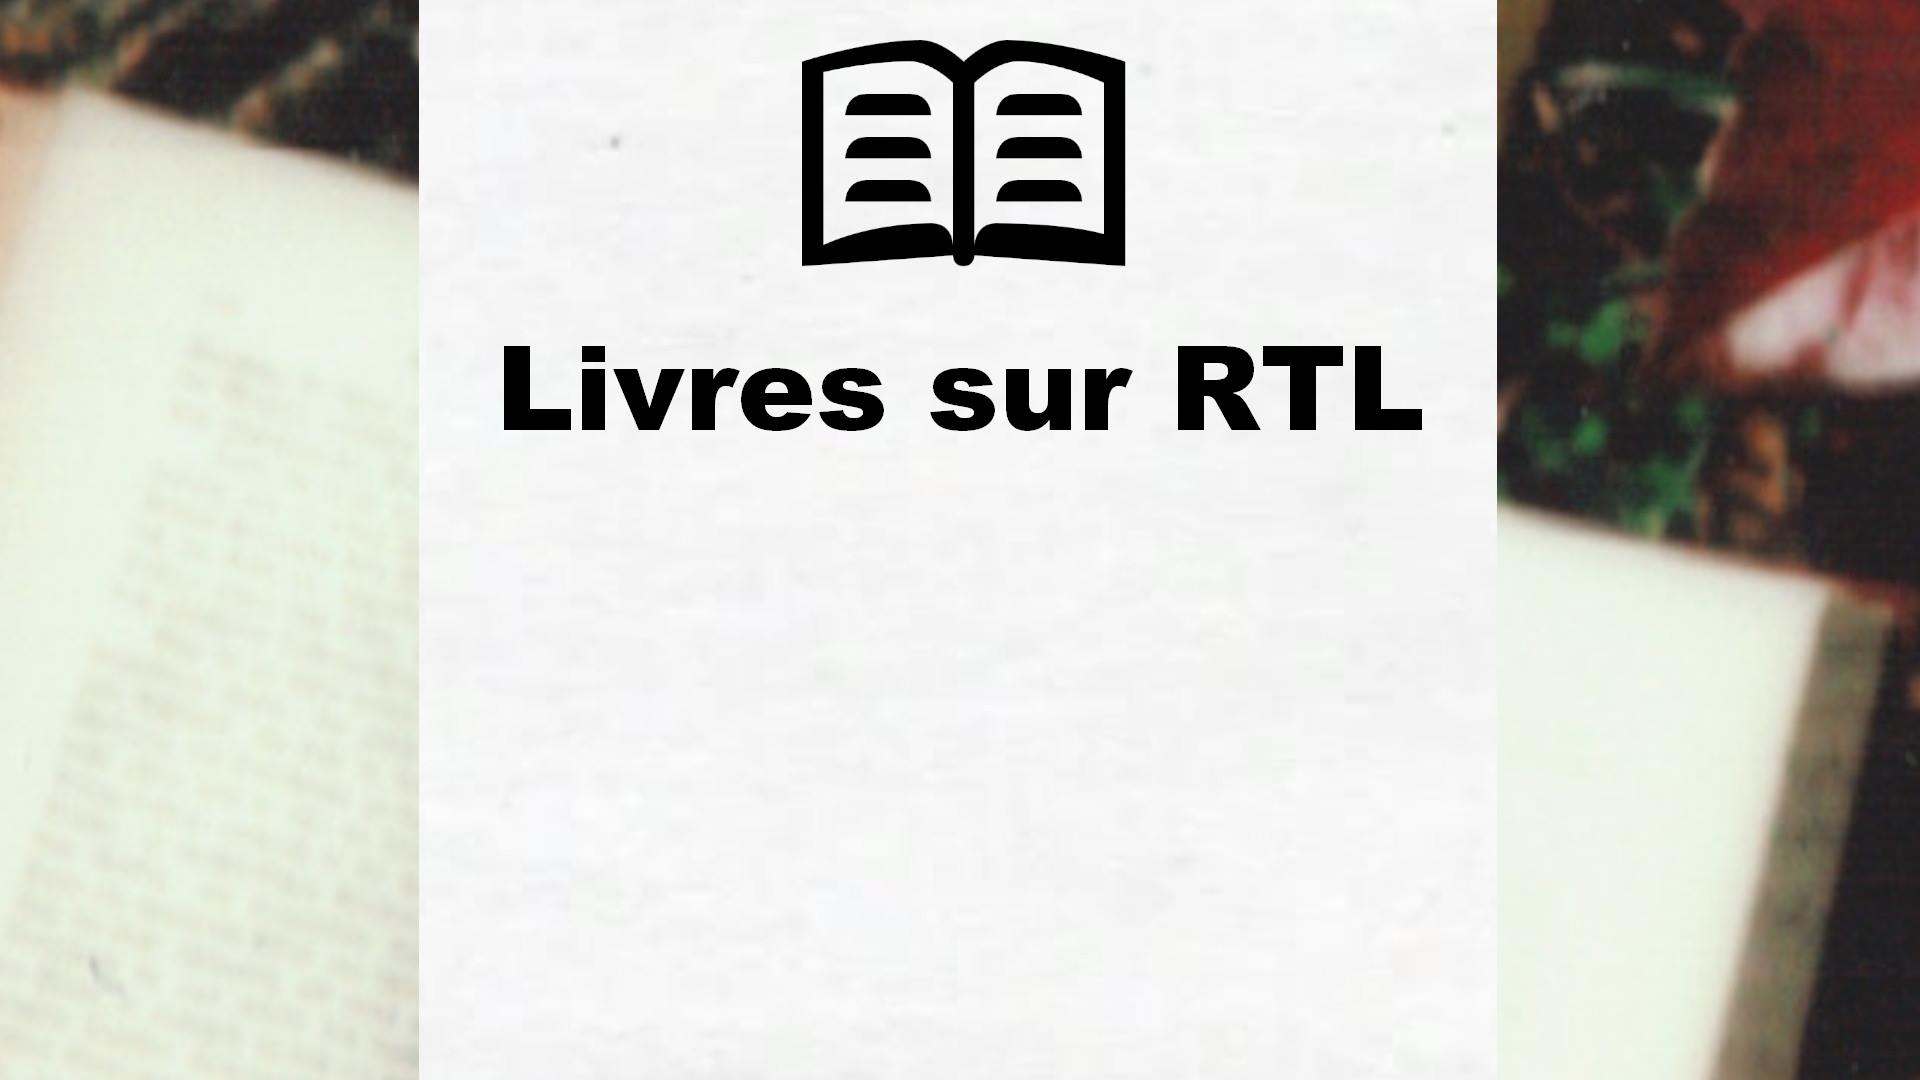 Livres sur RTL